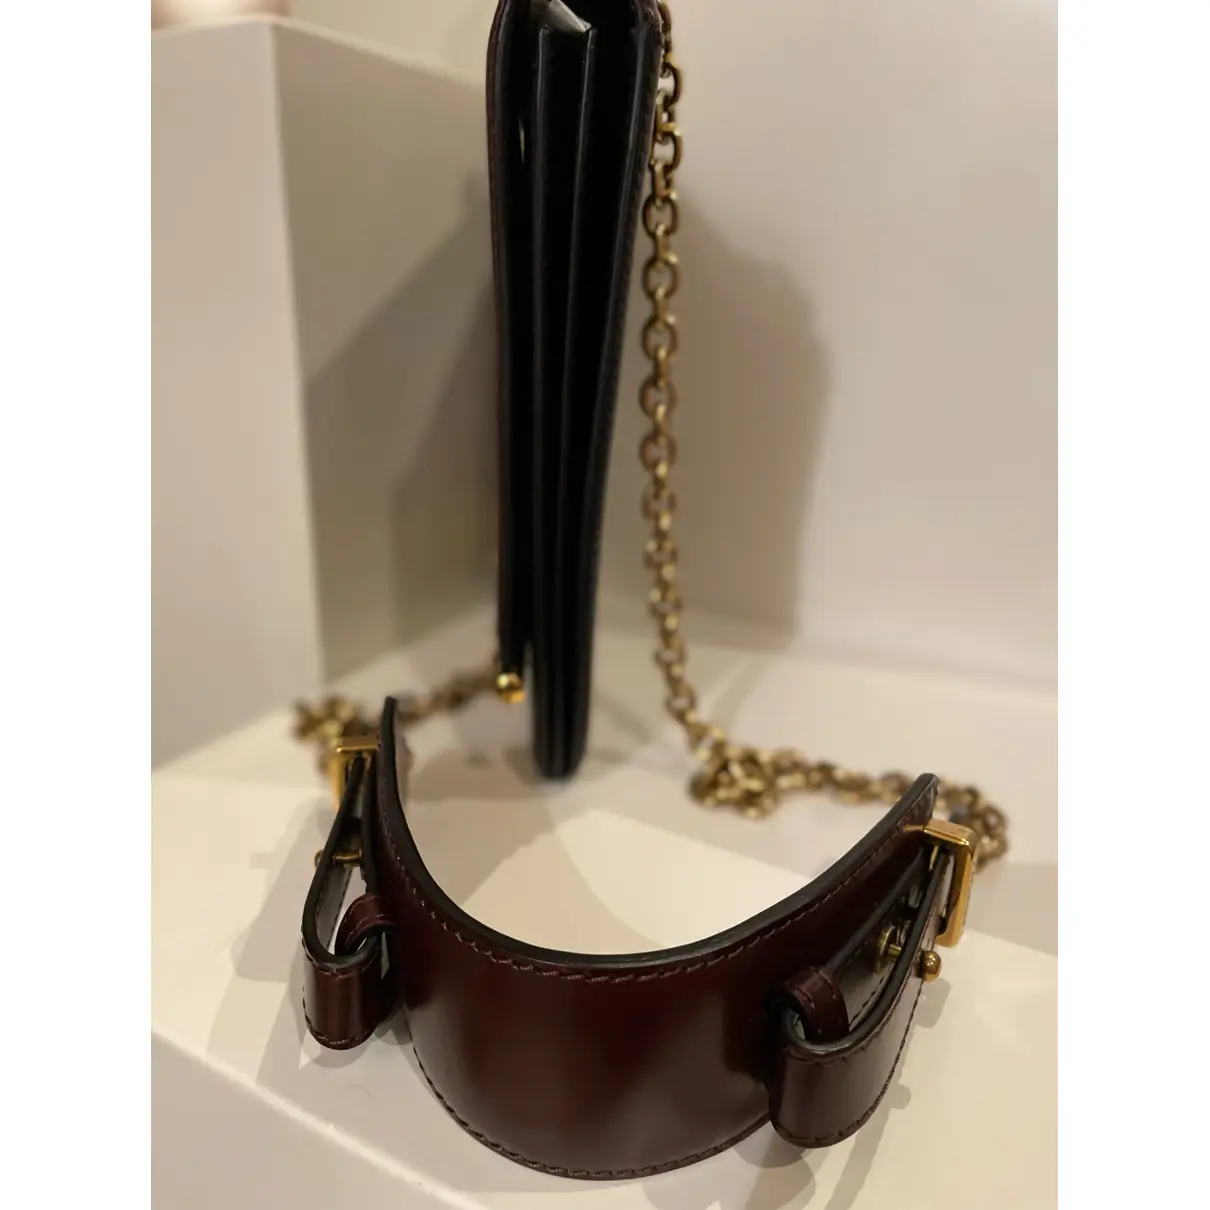 Buy Belstaff Leather handbag online